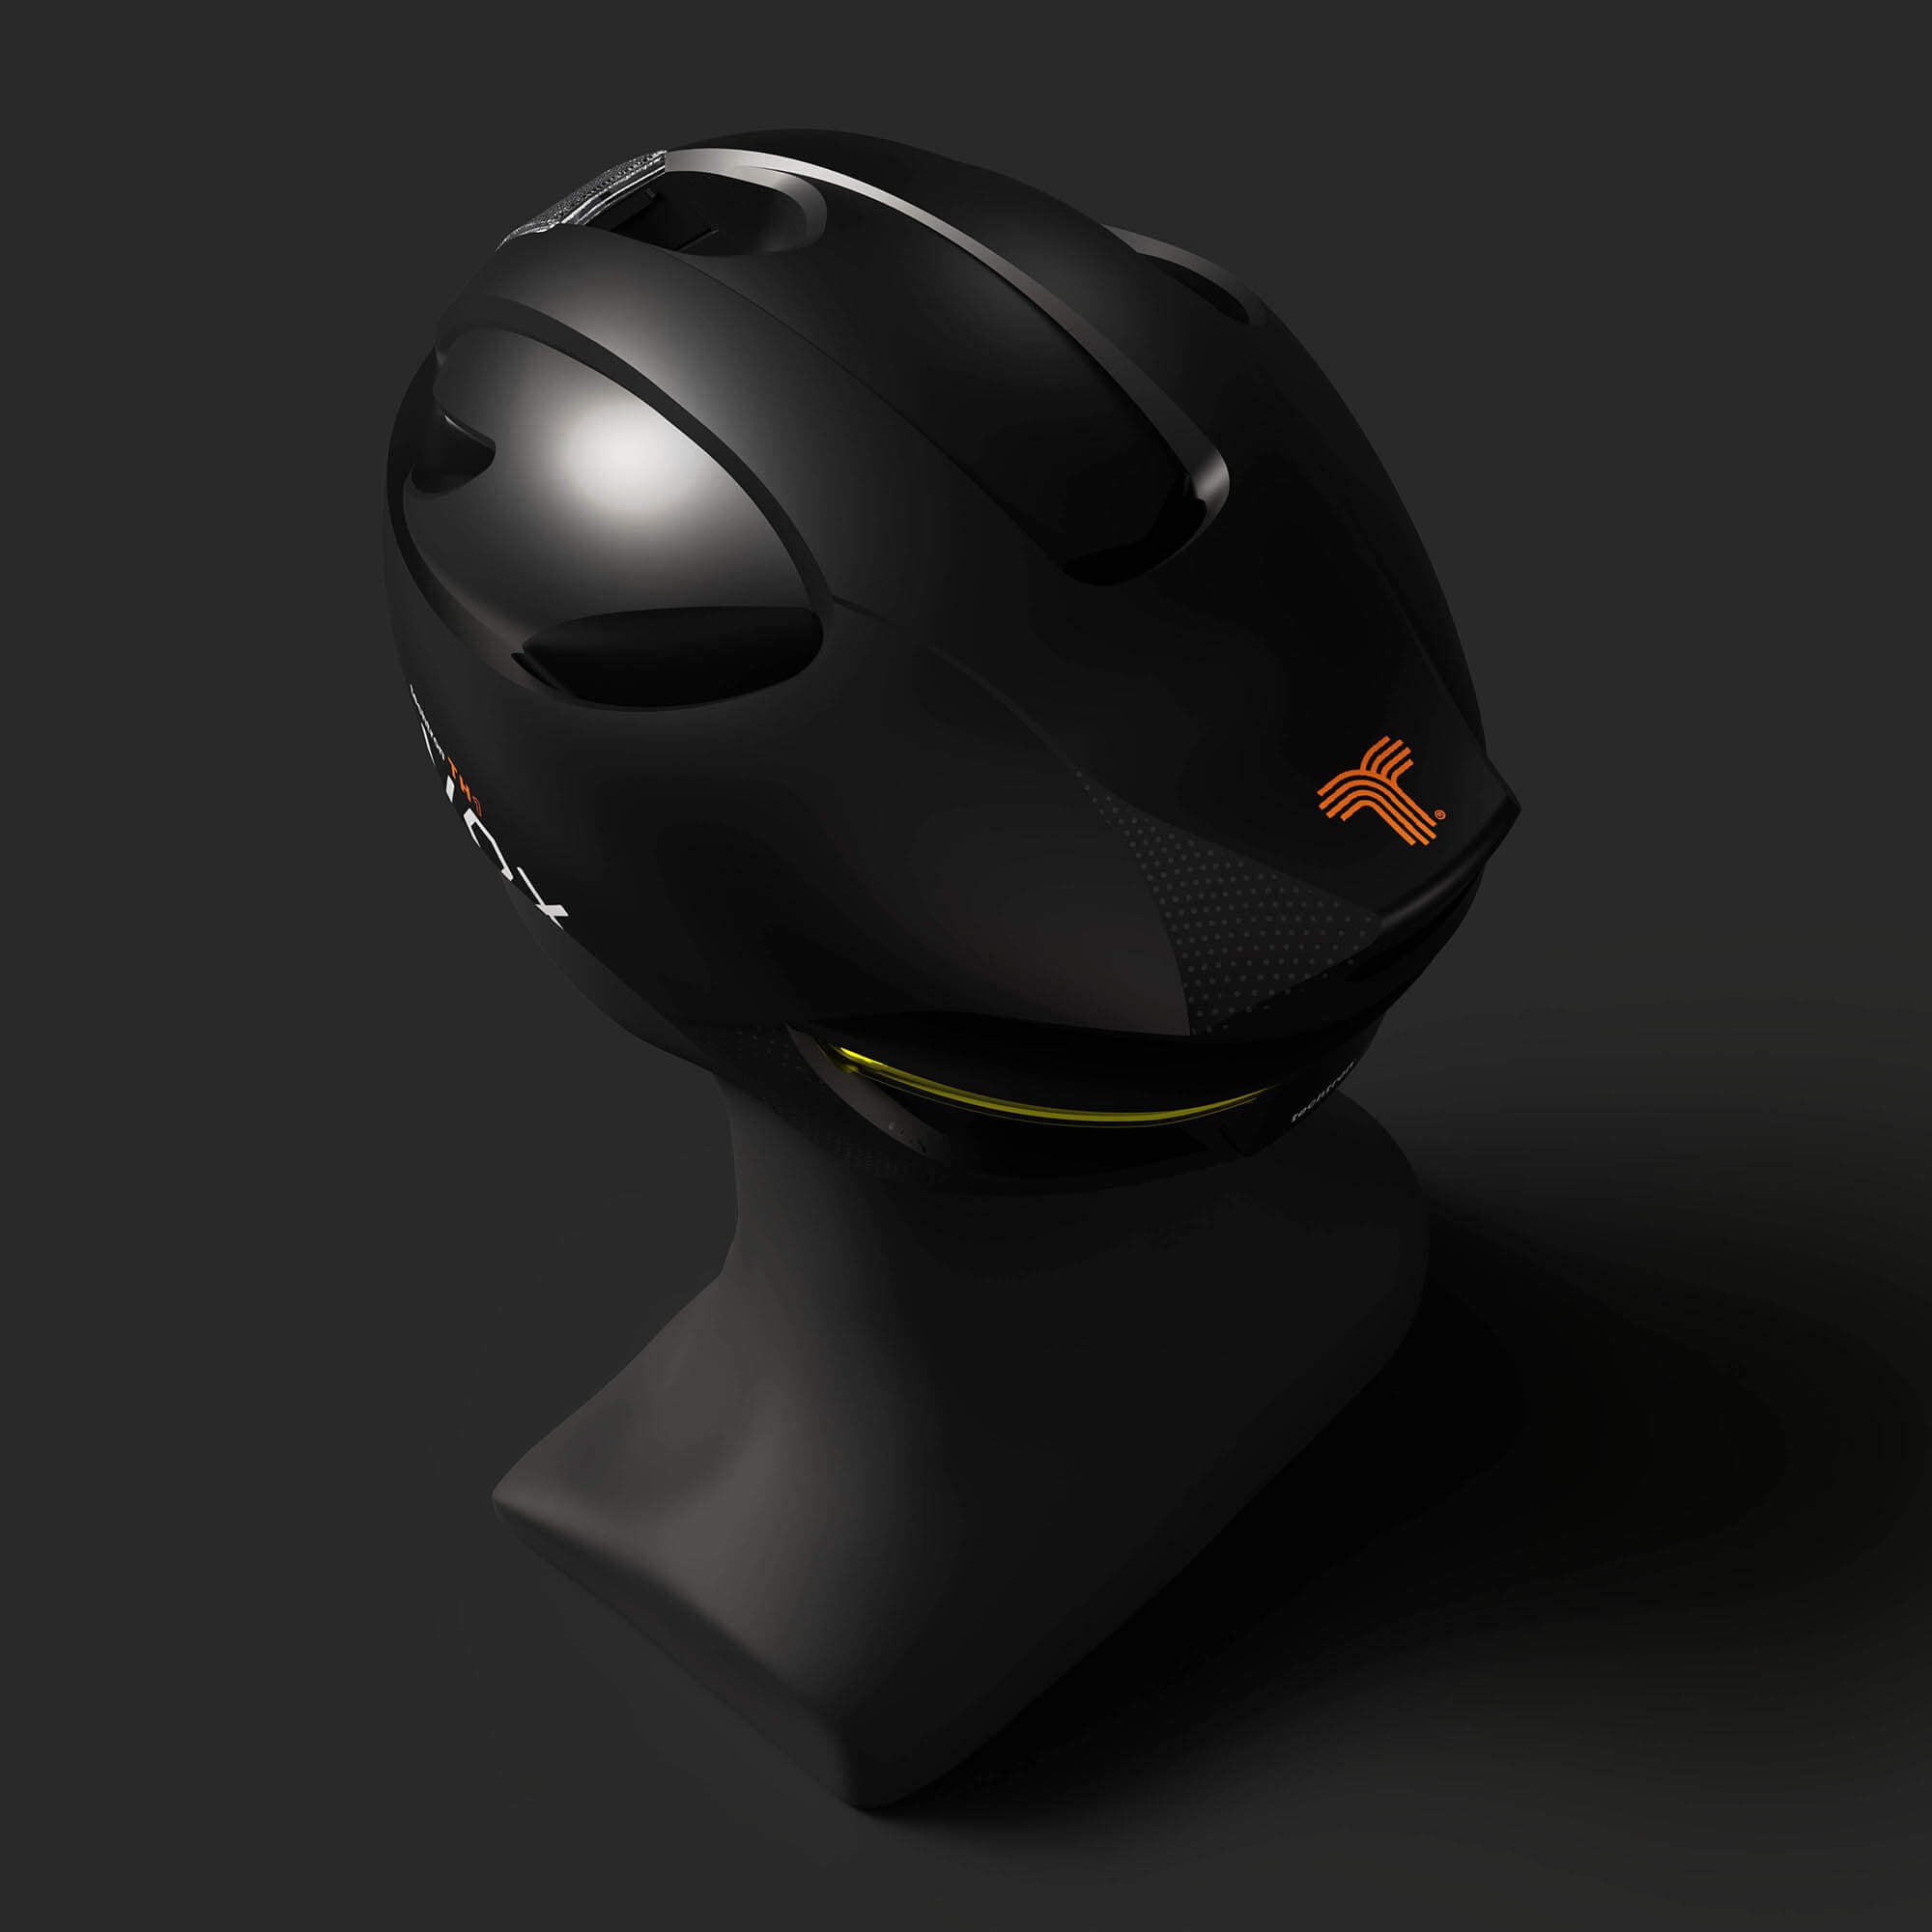 techtron TH1 VOX - Smart Helmet - Voice Controlled techtron